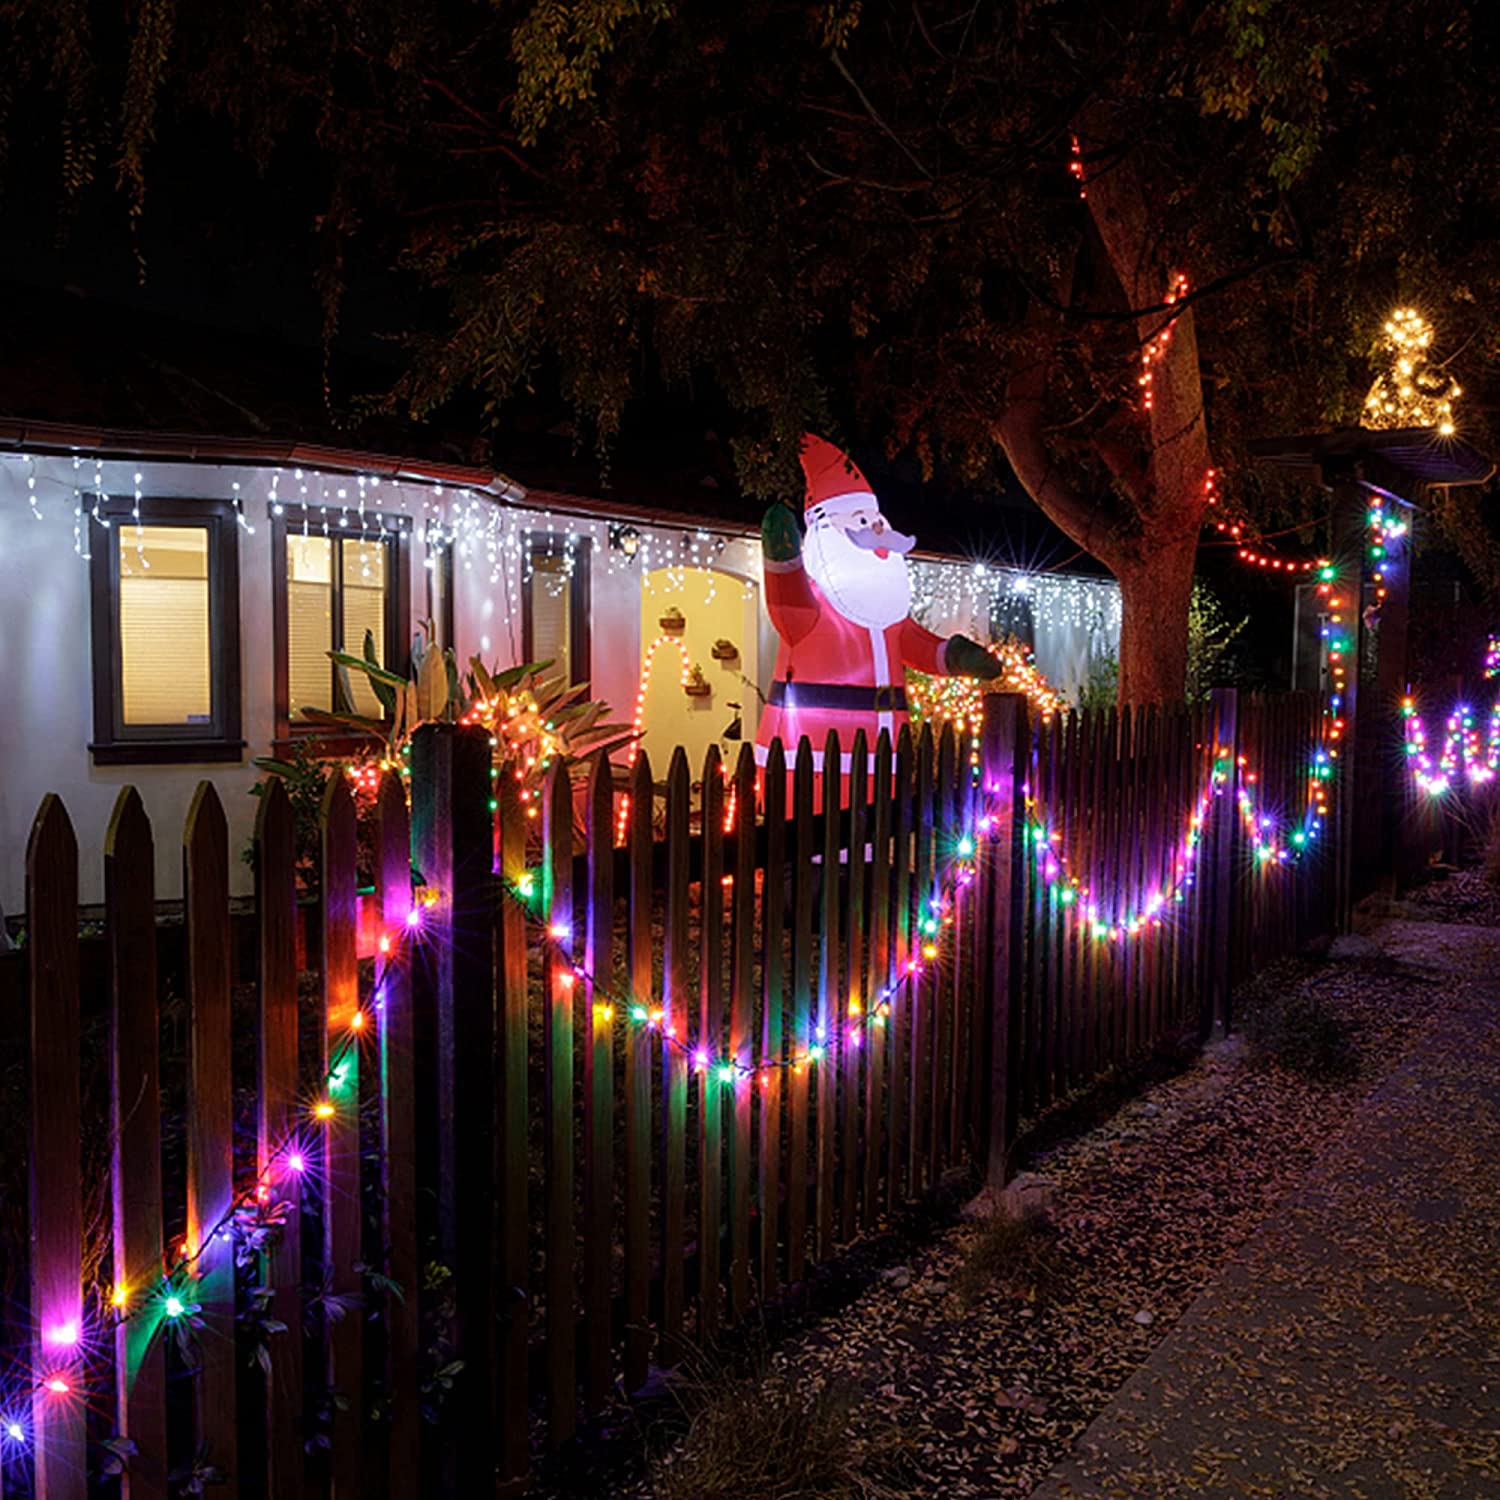 50 Meter Fairy String Lights for Diwali 8 Lighting Modes (Multi)